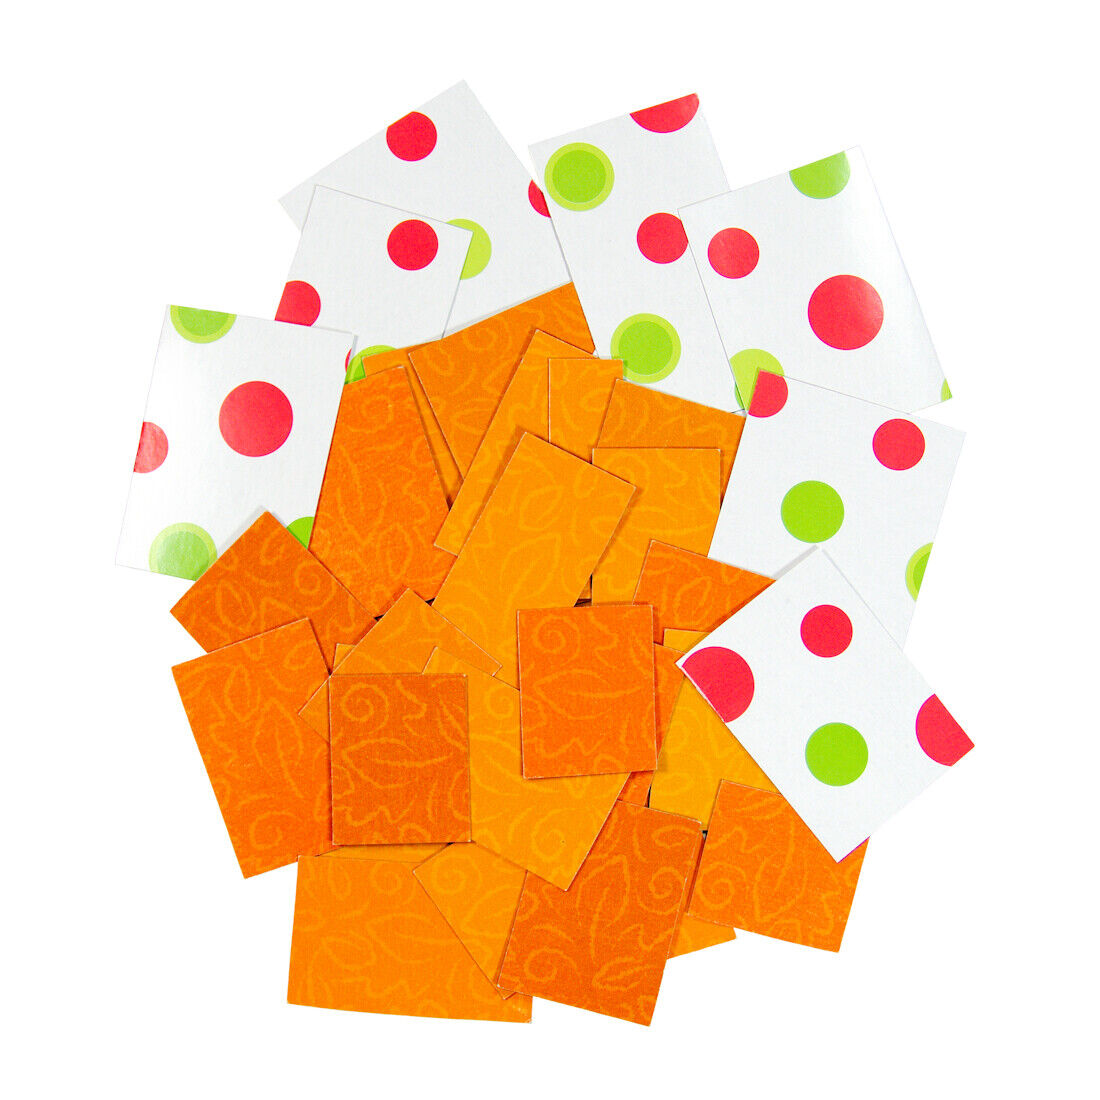 Bulk Scrapbook Rectangle Patterned Cardboard Shapes Polka Dot Orange Leaves Mix